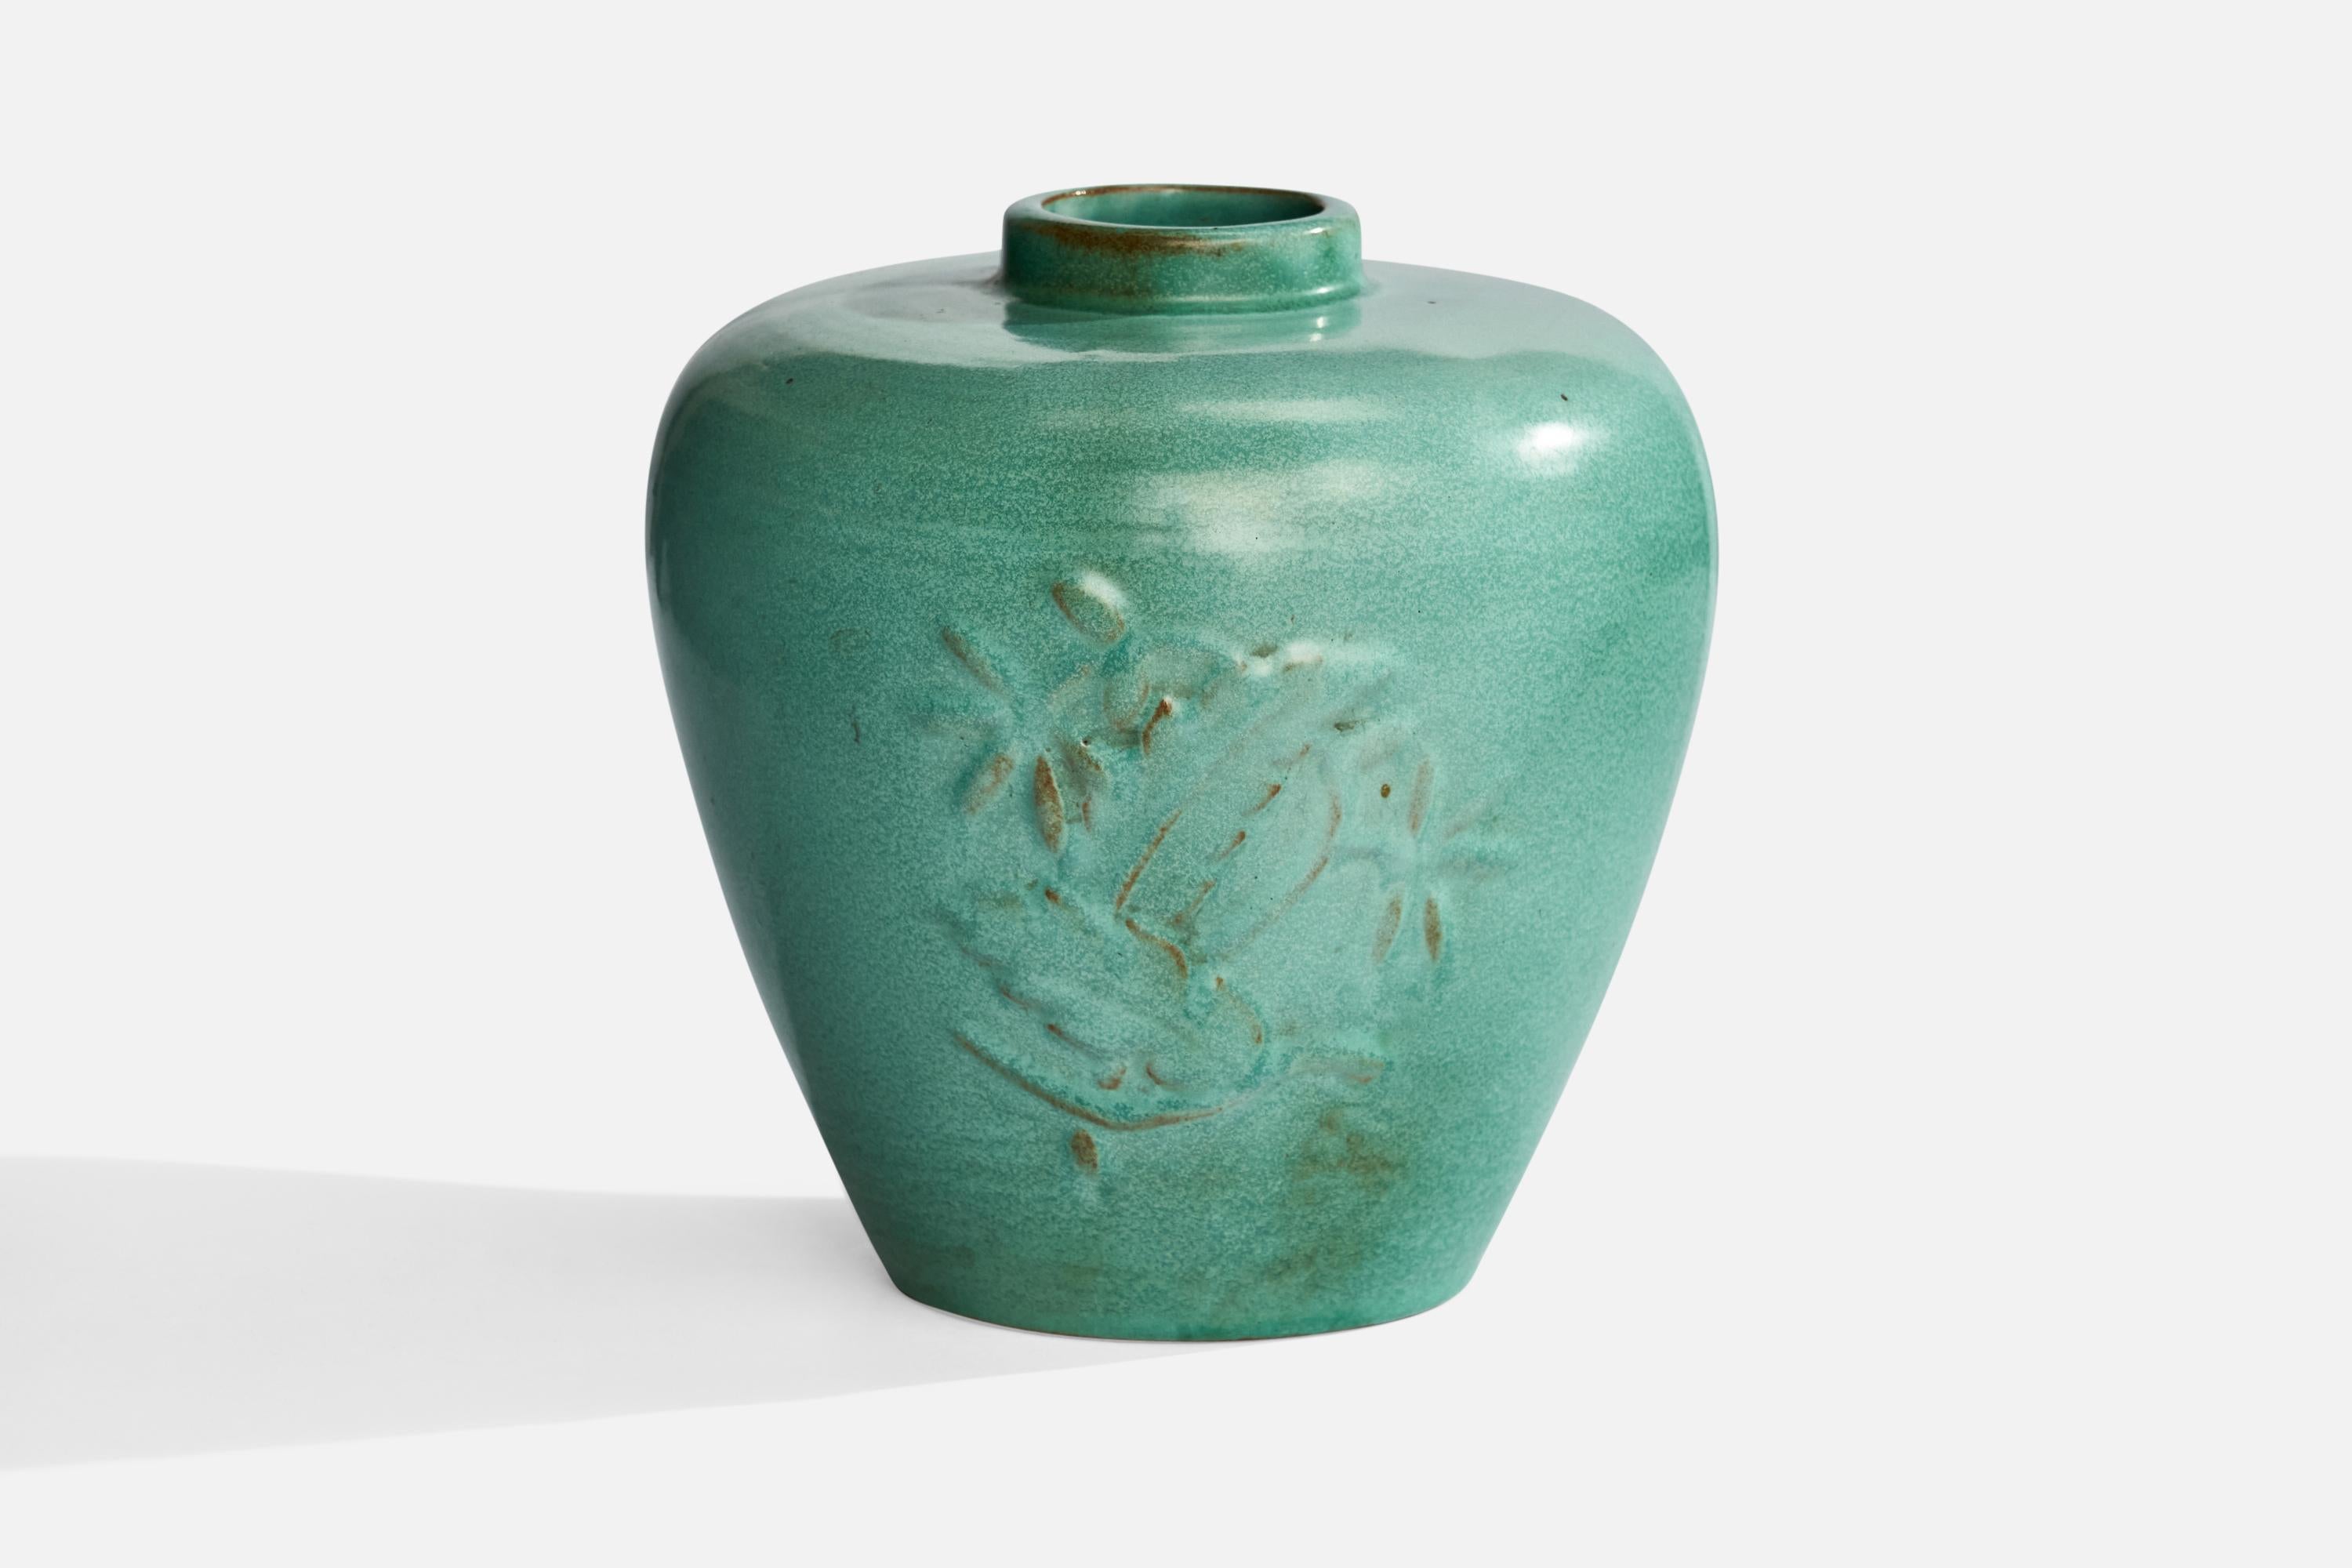 A green-glazed ceramic vase attributed to Karl Svensson for Höganäs, Sweden, 1930s.